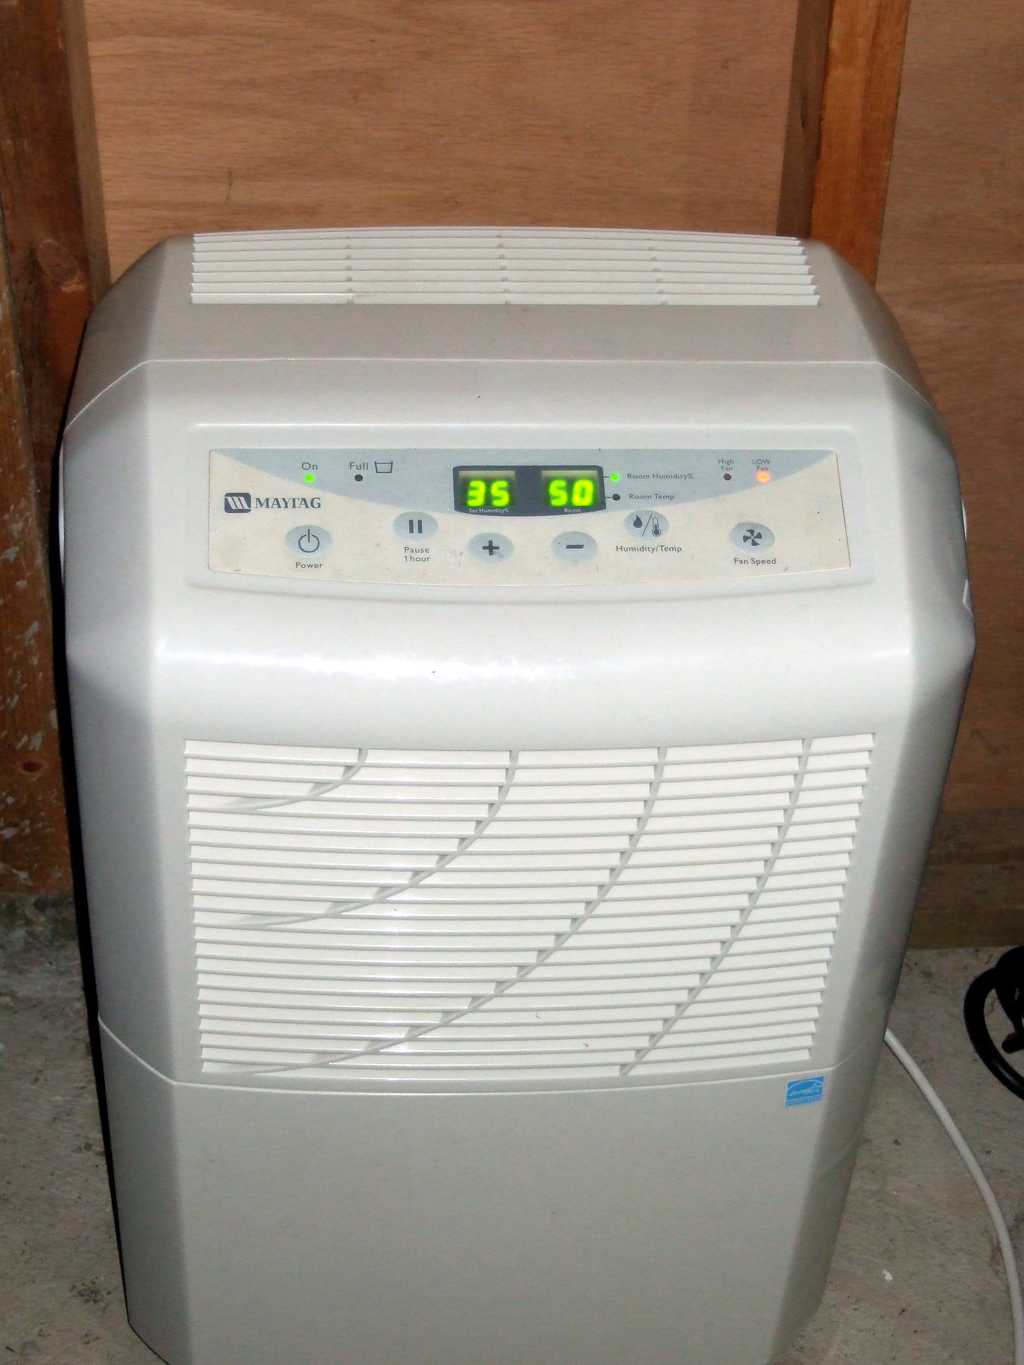 Le déshumidificateur diminue l'humidité présente dans l'air. © Dchristle, Domaine public, Wikimedia Commons